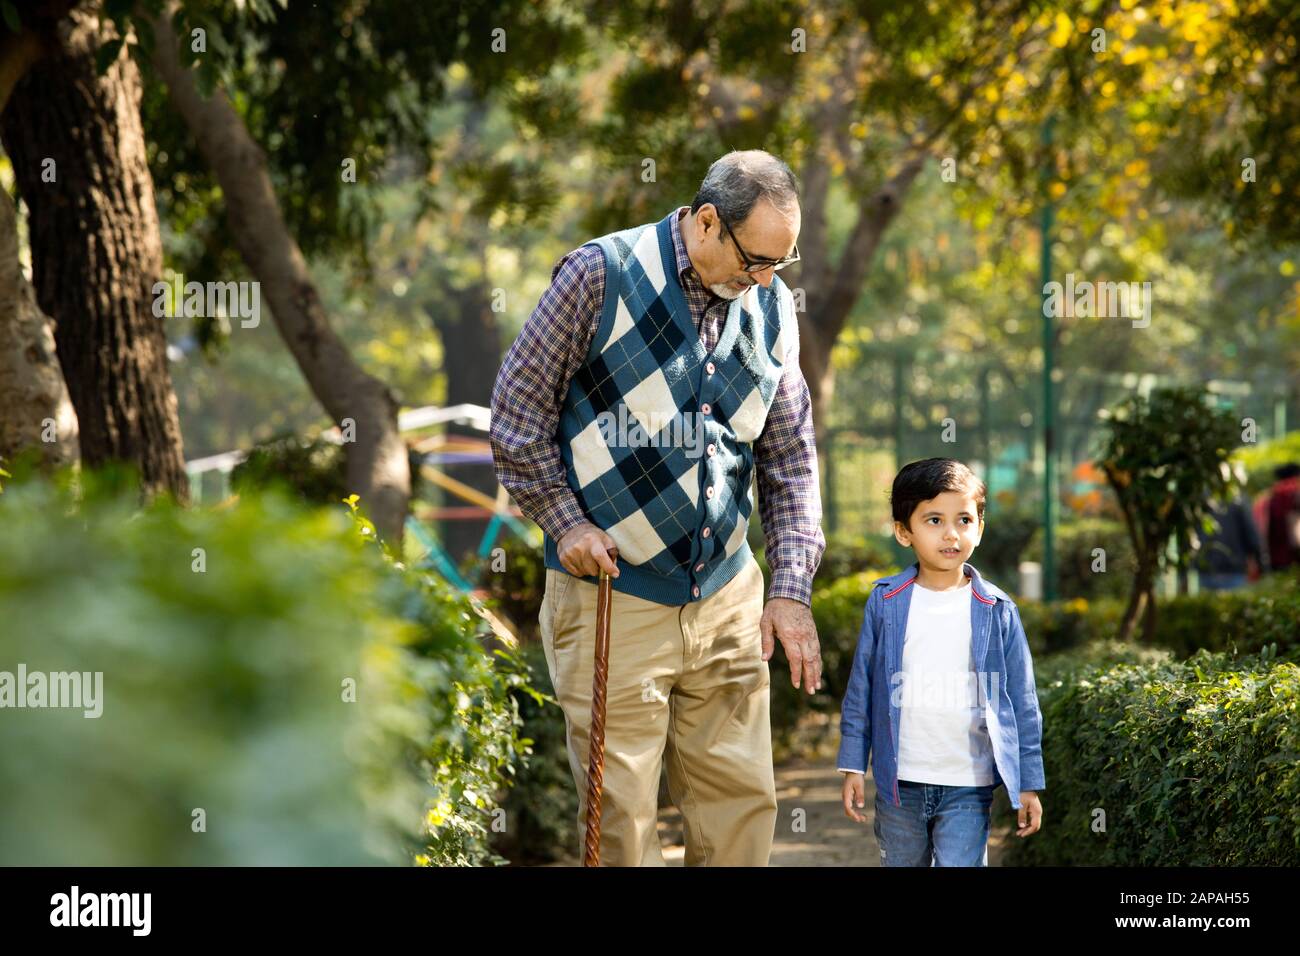 Grand-père joyeux qui passe du temps libre avec son petit-fils Banque D'Images